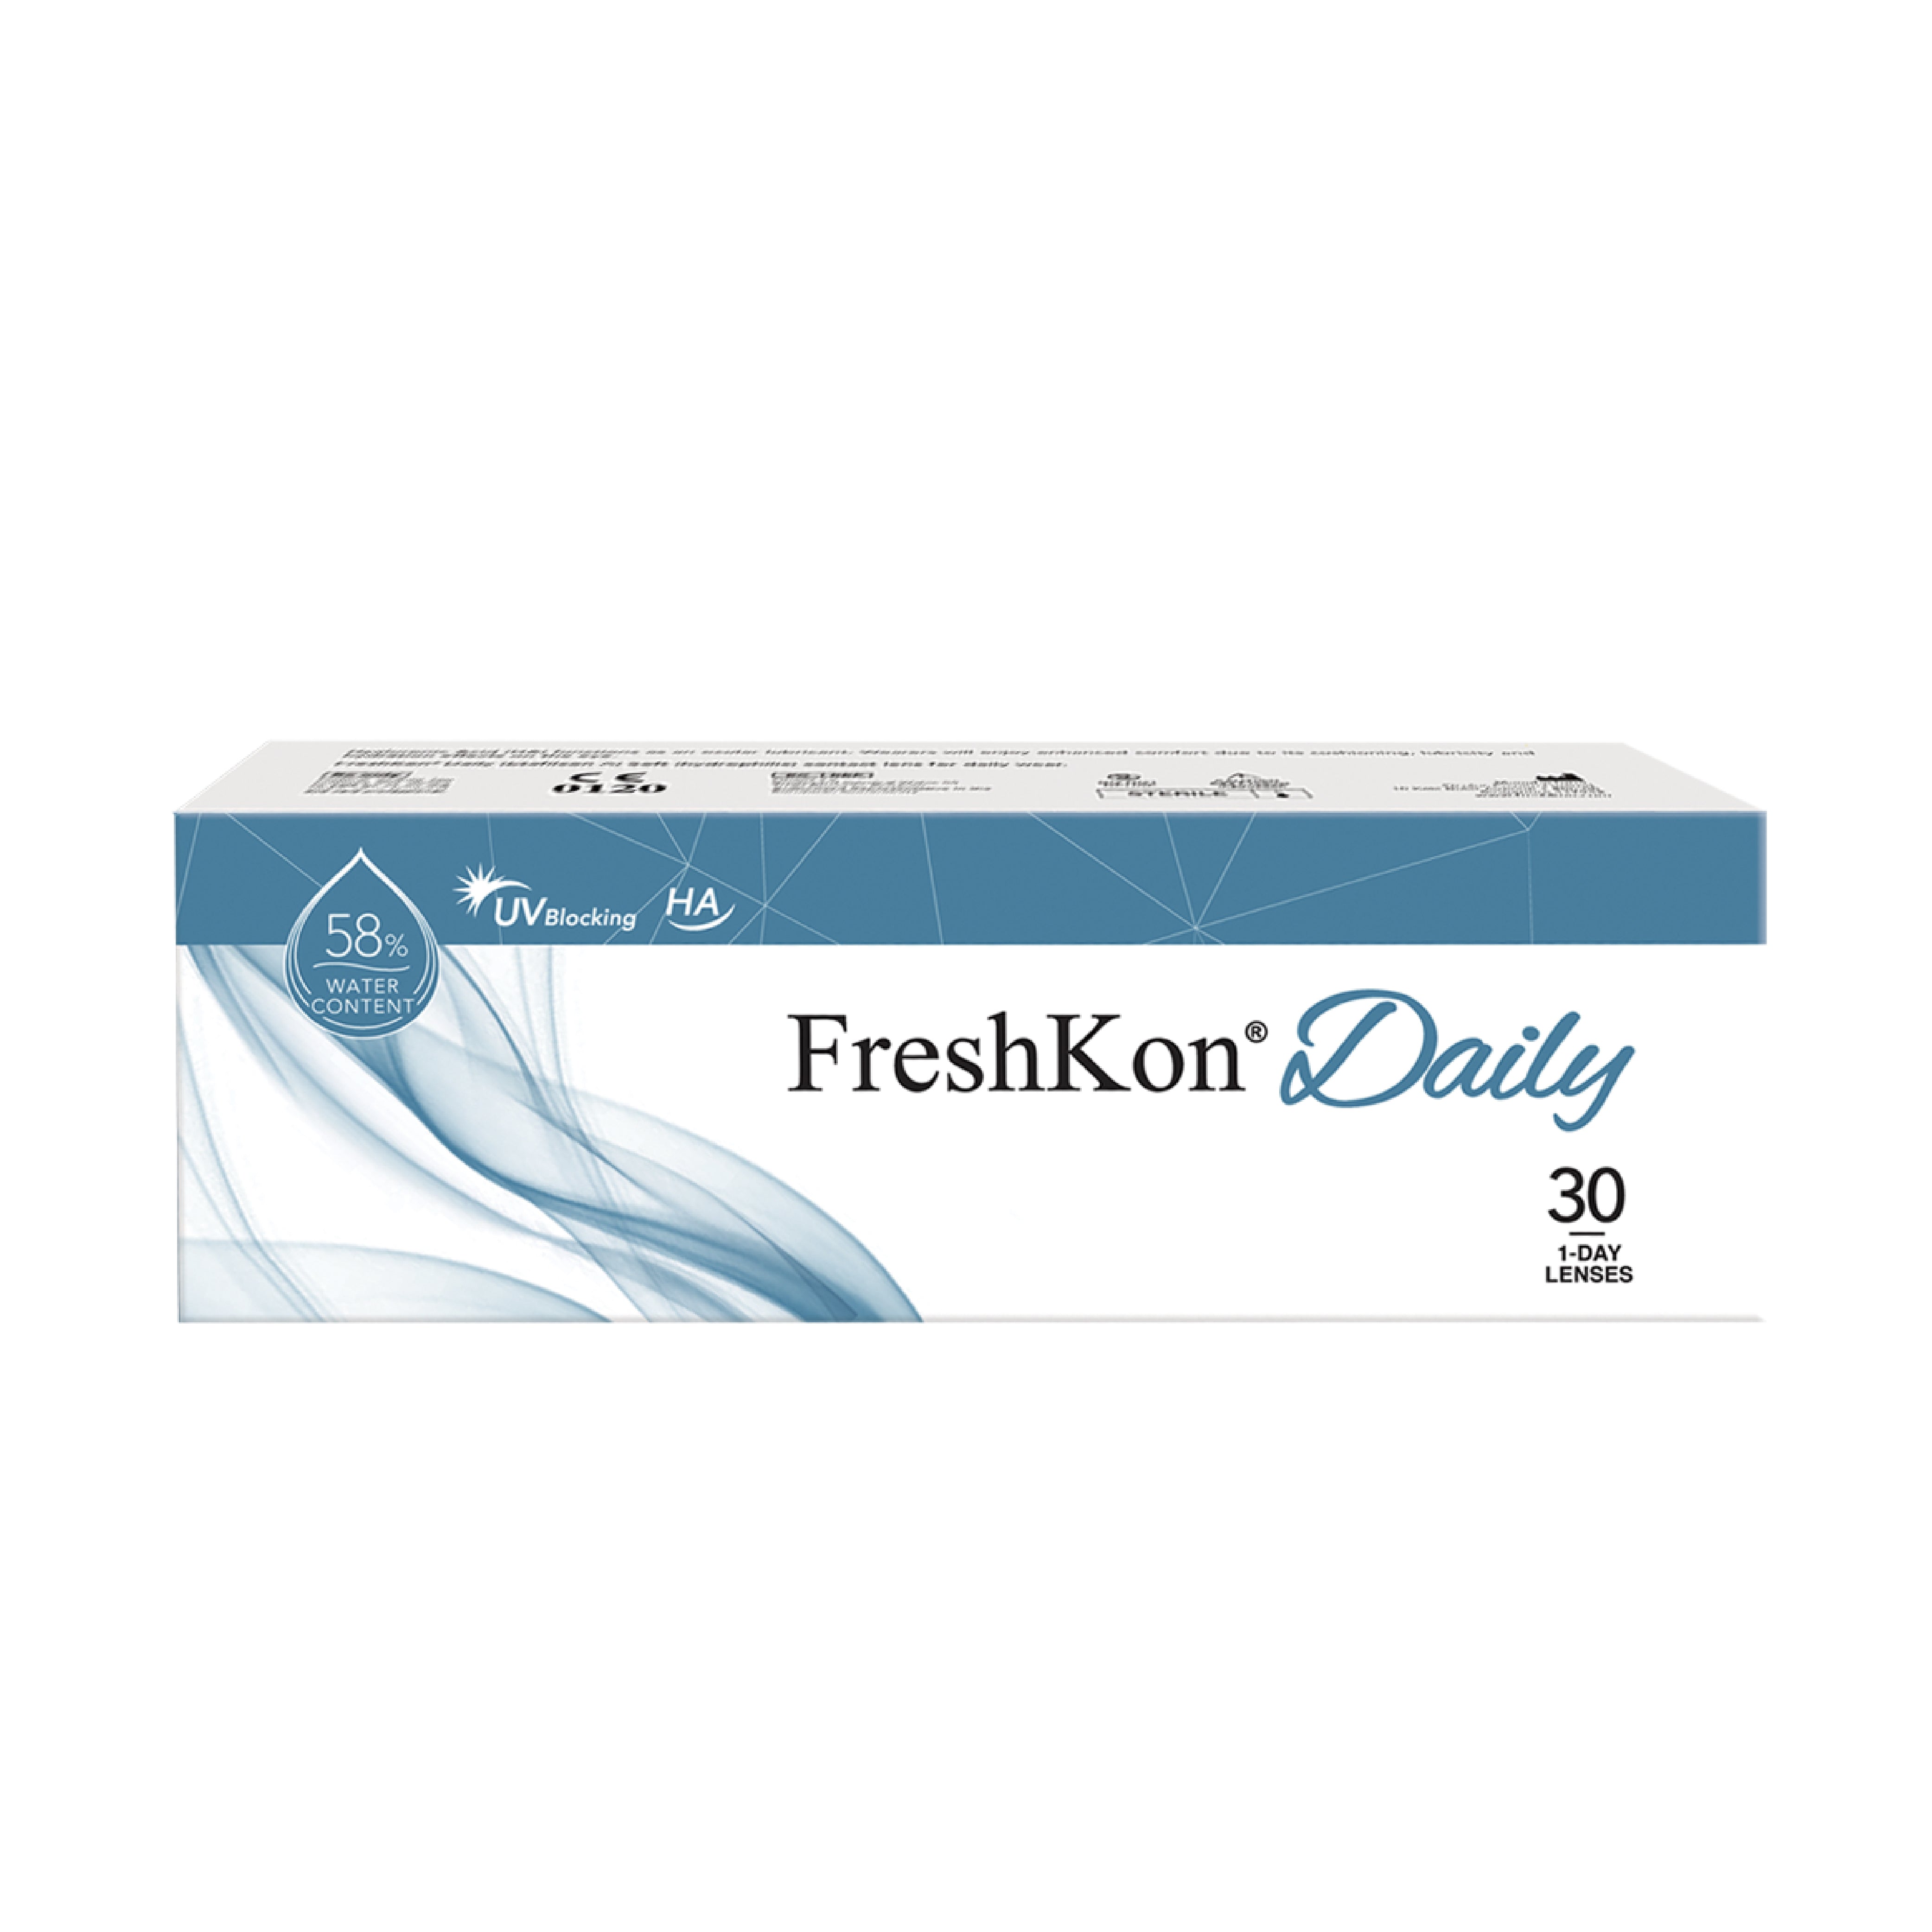 FreshKon Daily (10 PCS / 30 PCS)